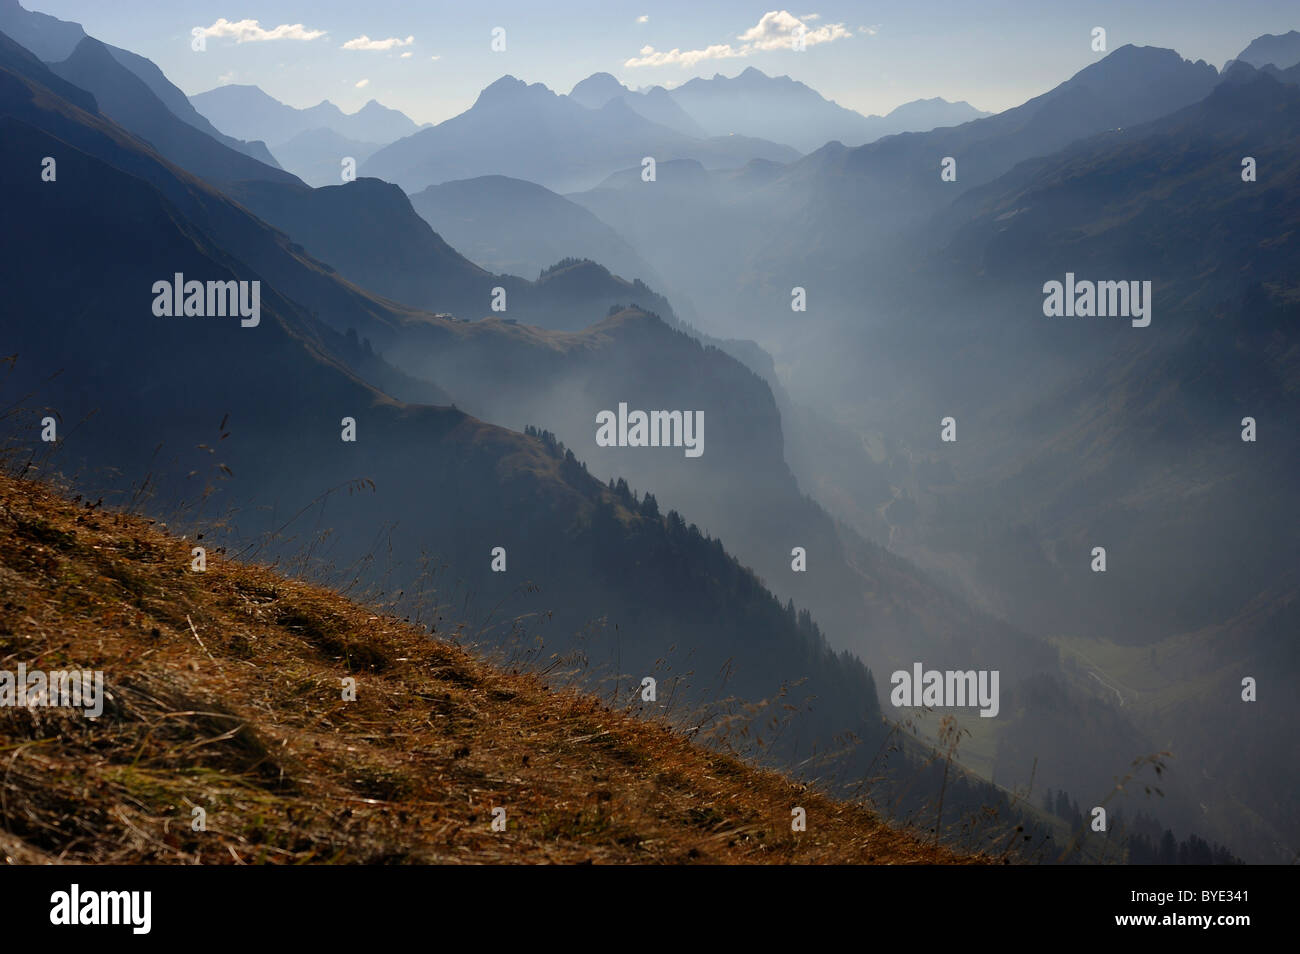 Mountain valley with haze, Allgaeu Alps, Kleinwalsertal valley, Vorarlberg, Austria, Europe Stock Photo